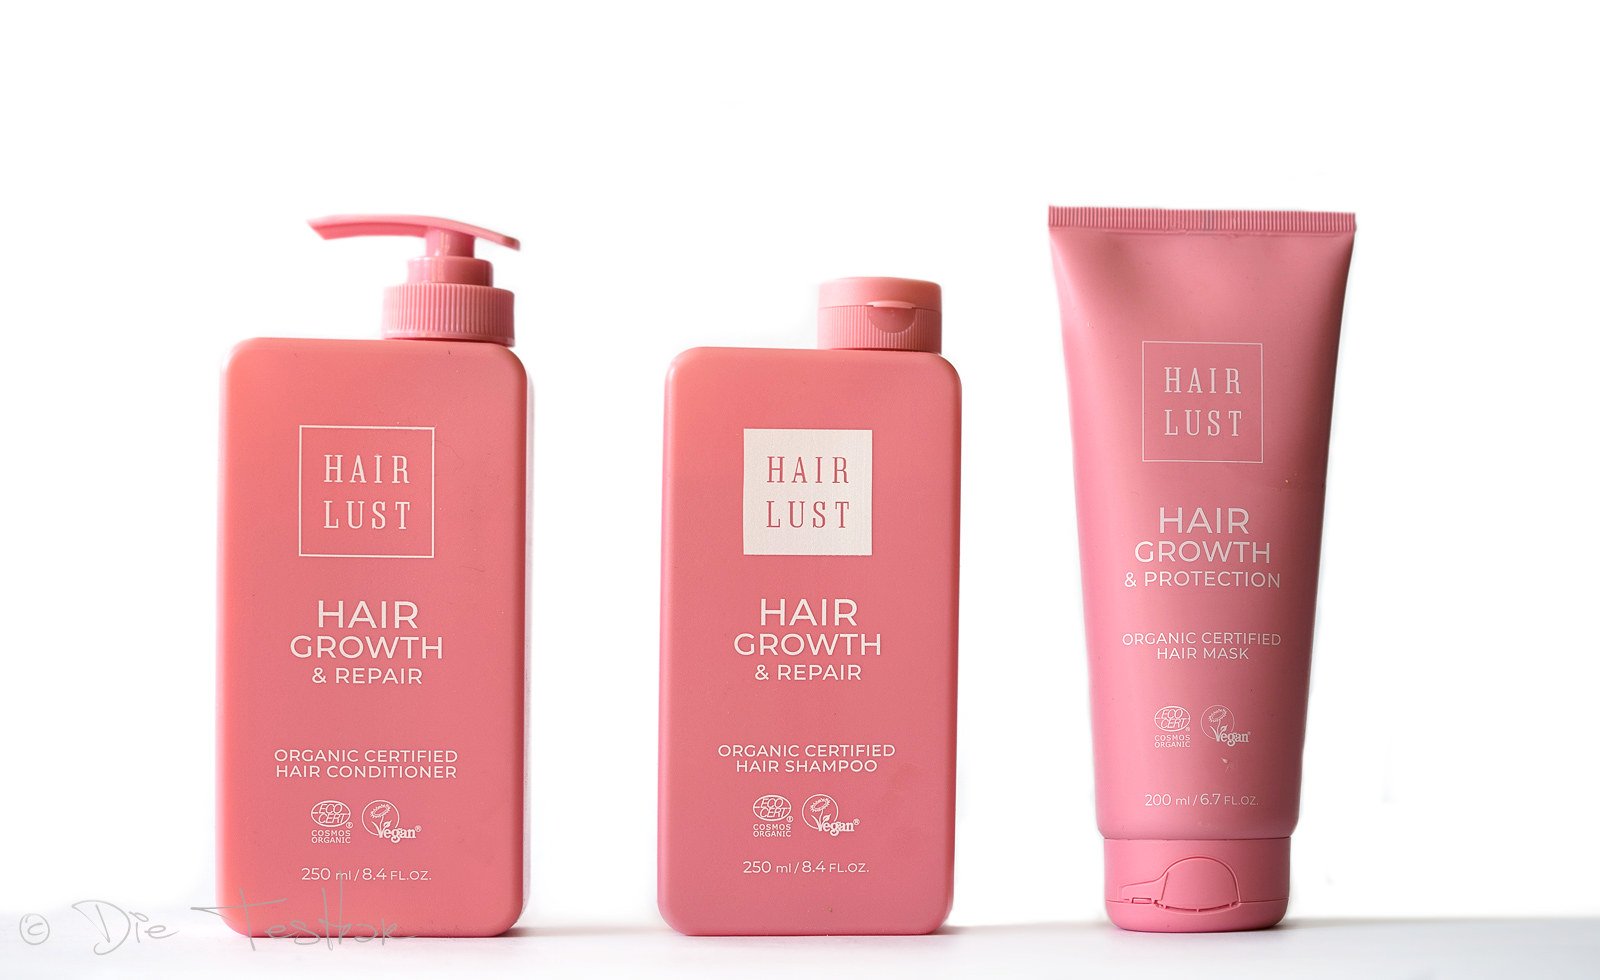 Hair Growth & Repair Pflegelinie von HairLust ohne Silikone, für gesundes Haarwachstum - Shampoo, Conditioner, Mask und Serum bei Spliss und trockenem Haar 1